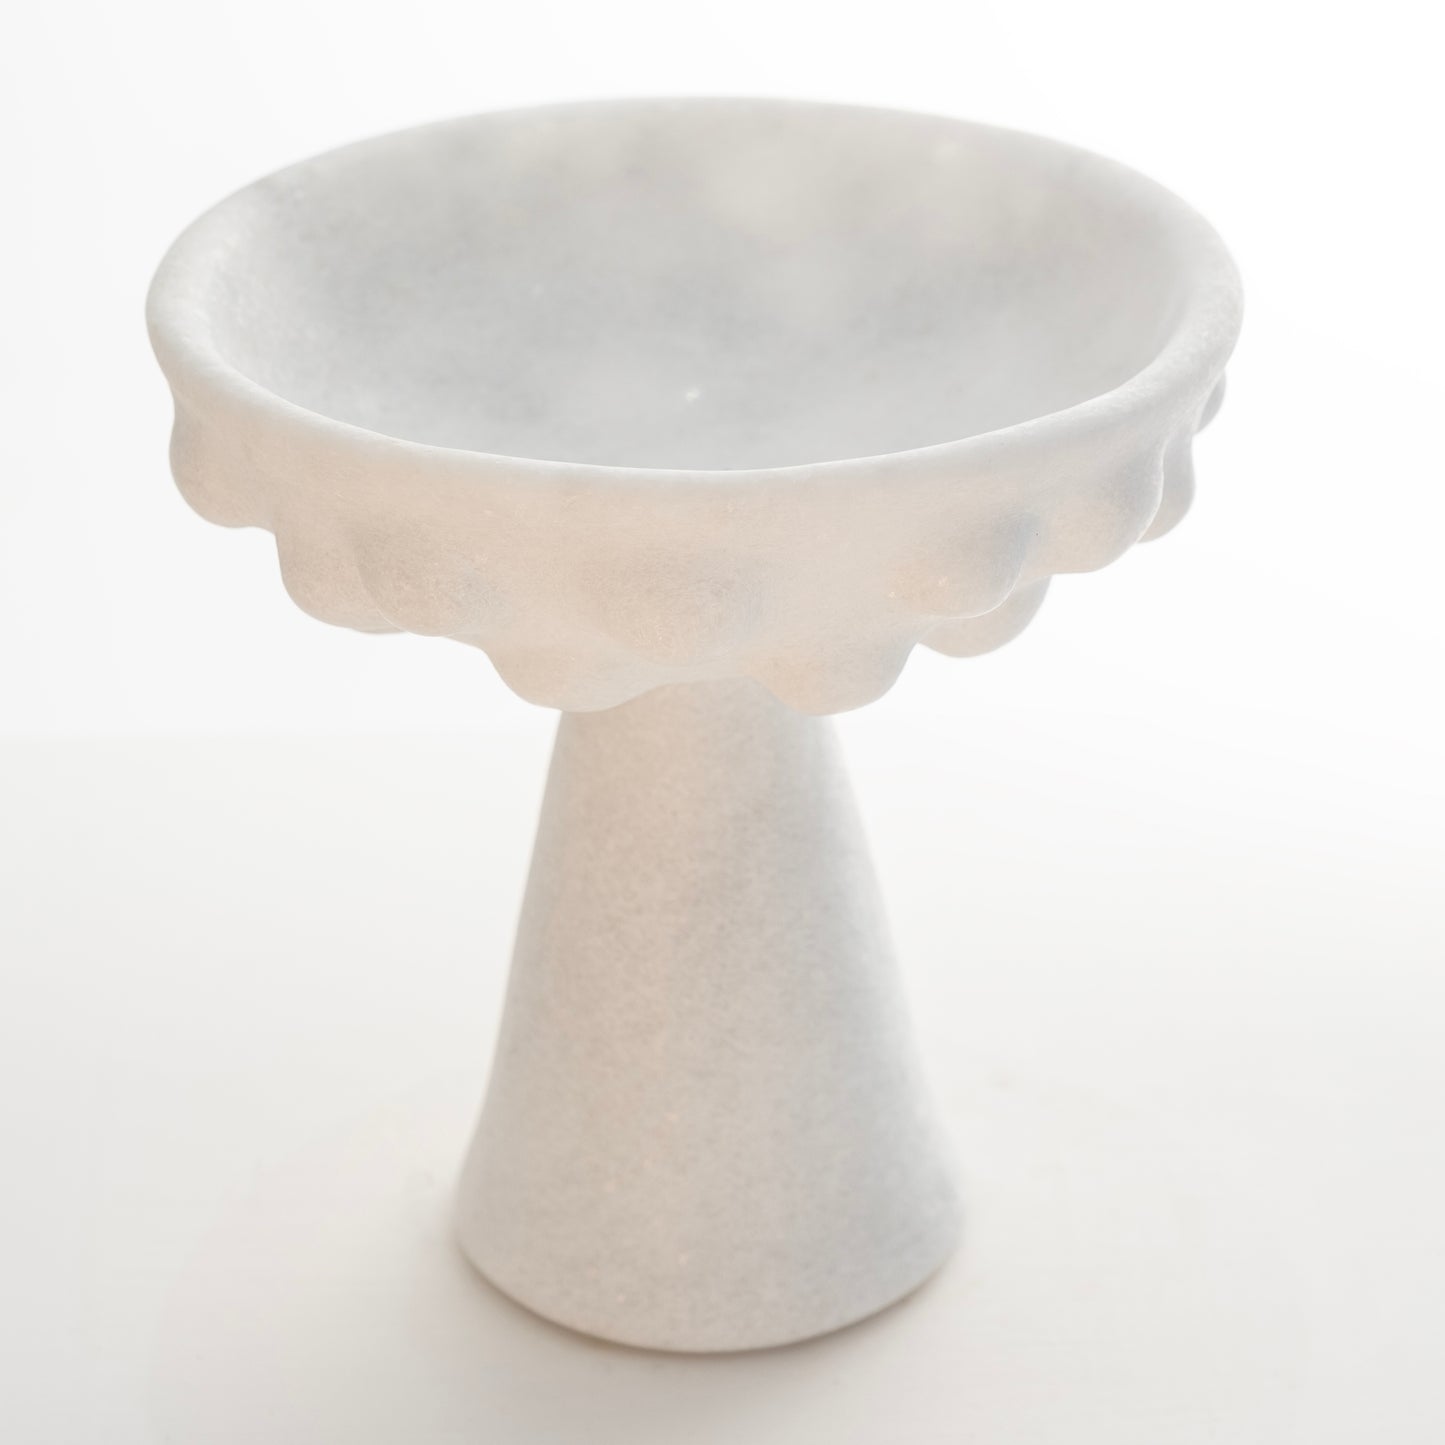 Cloud Bowl - sculpture